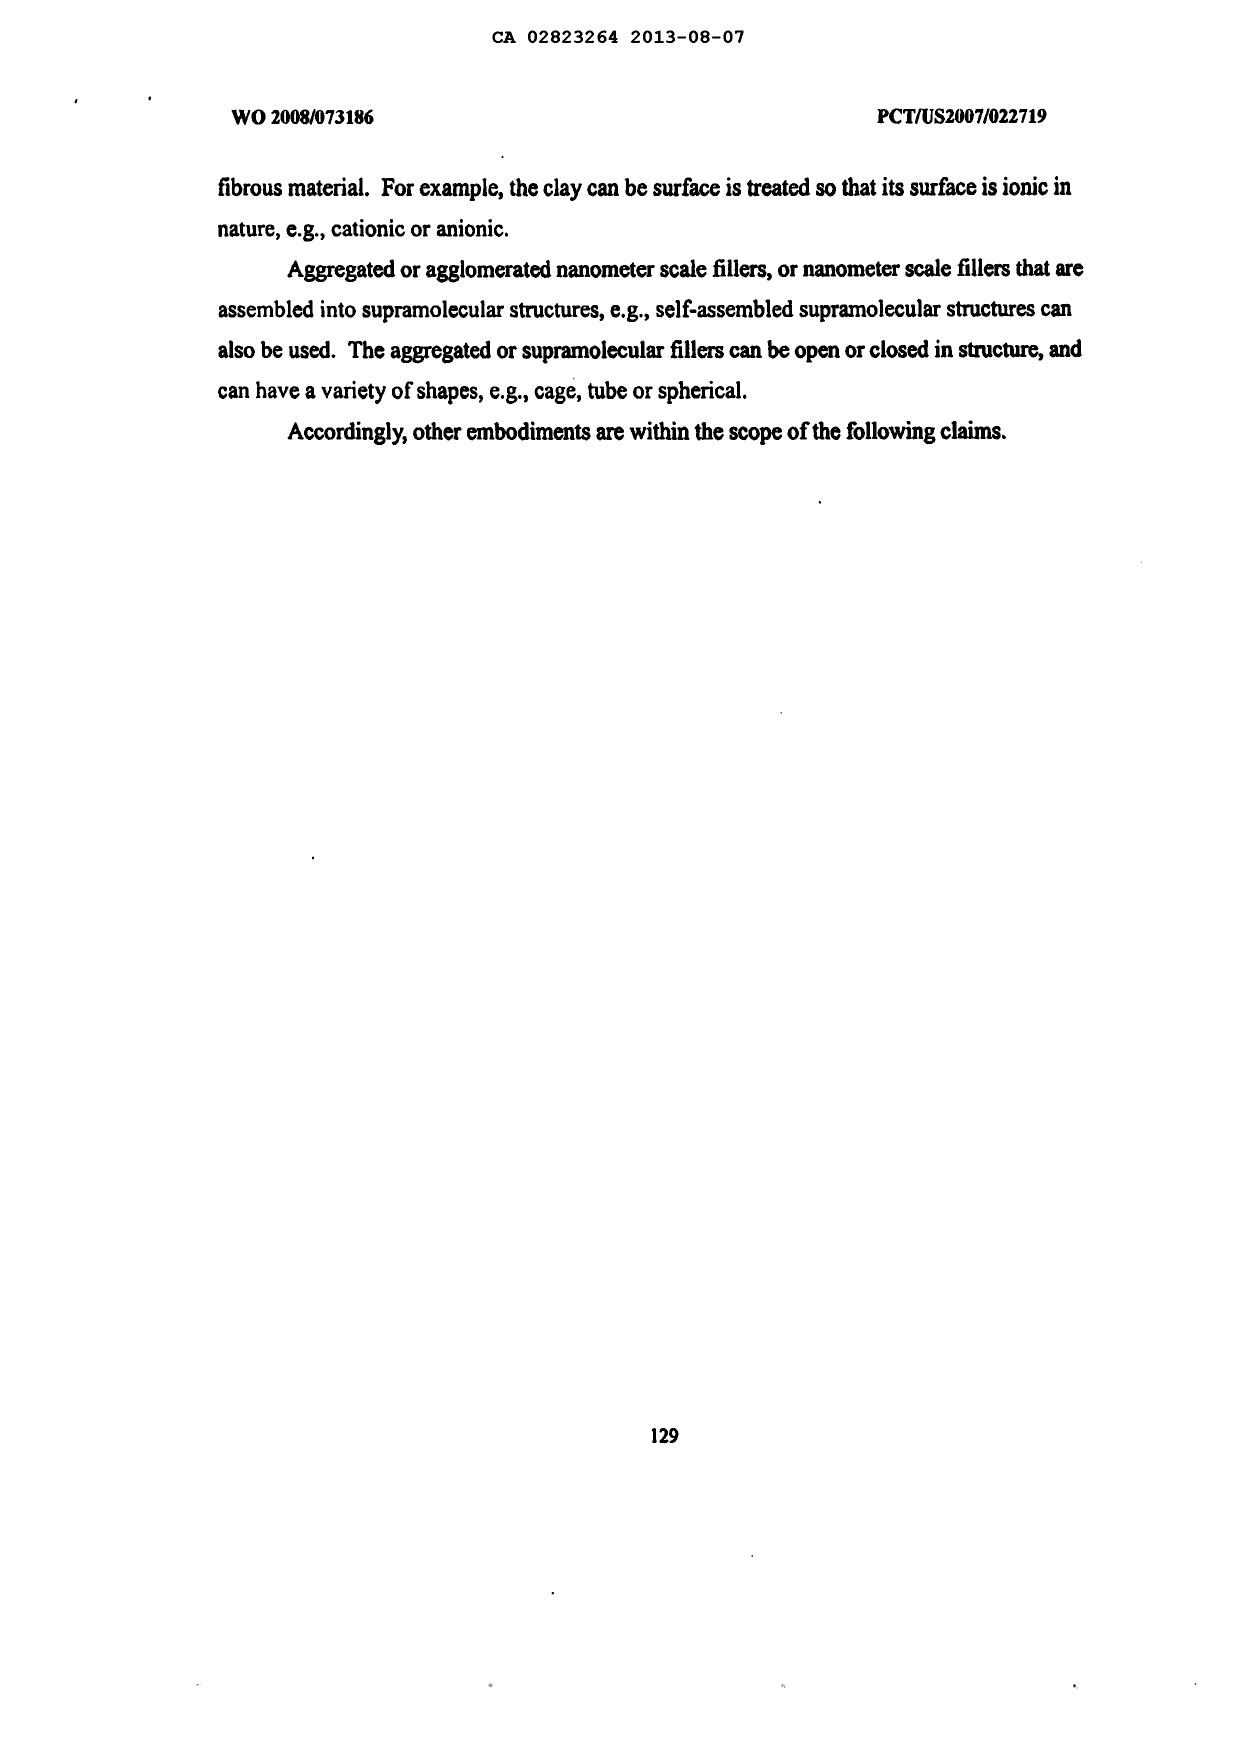 Document de brevet canadien 2823264. Description 20121206. Image 130 de 130